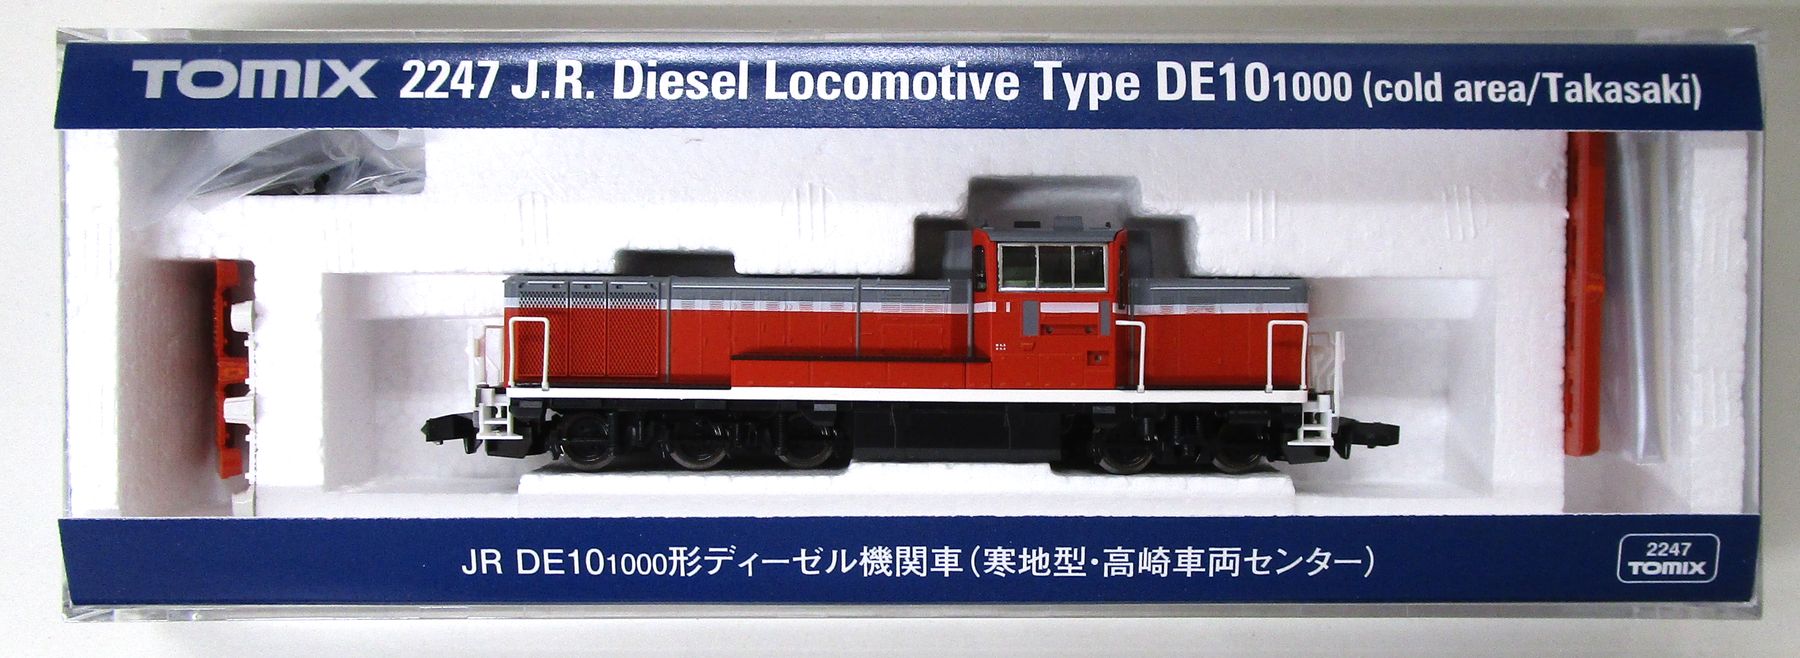 公式]鉄道模型(2247JR DE10-1000形ディーゼル機関車 (寒地型・高崎車両